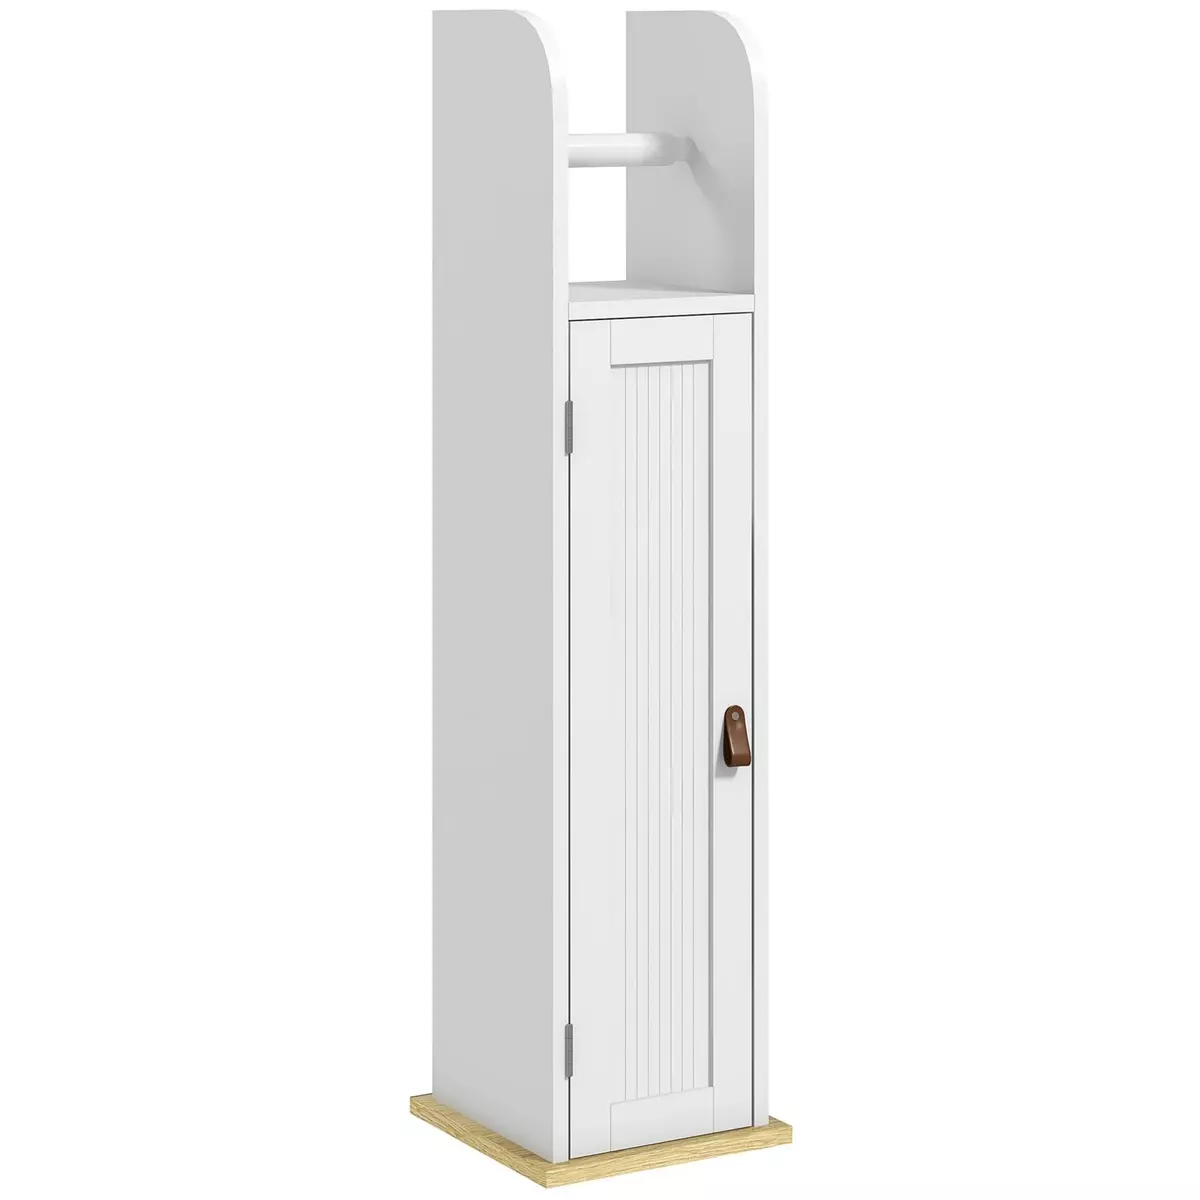 KLEANKIN Support papier toilette - porte-papier toilette - armoire pour papier toilette - porte, 2 étagères, sortie papier blanc bois clair